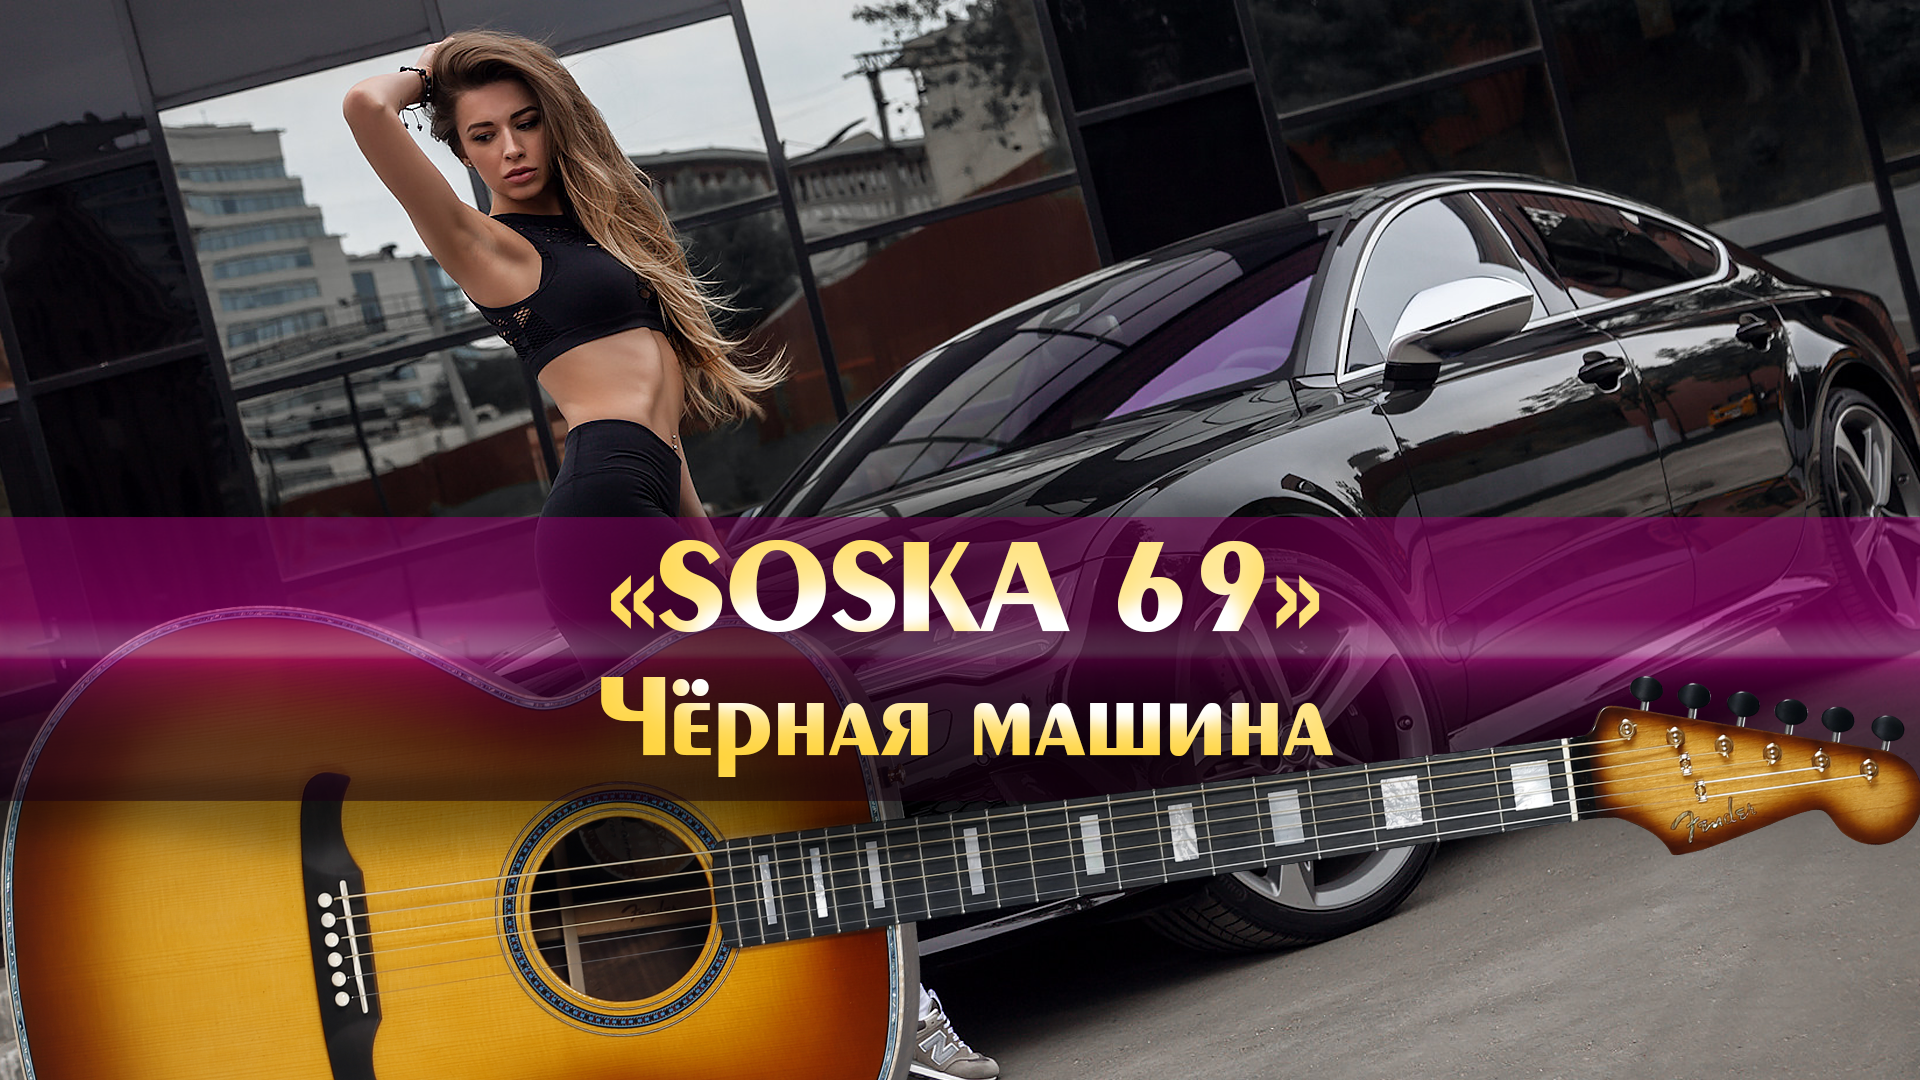 Песня soska 69 черная. Чёрная машина soska69. Соска 69 чёрная машина. Soska69 песни чёрная машина. Соска в машине.